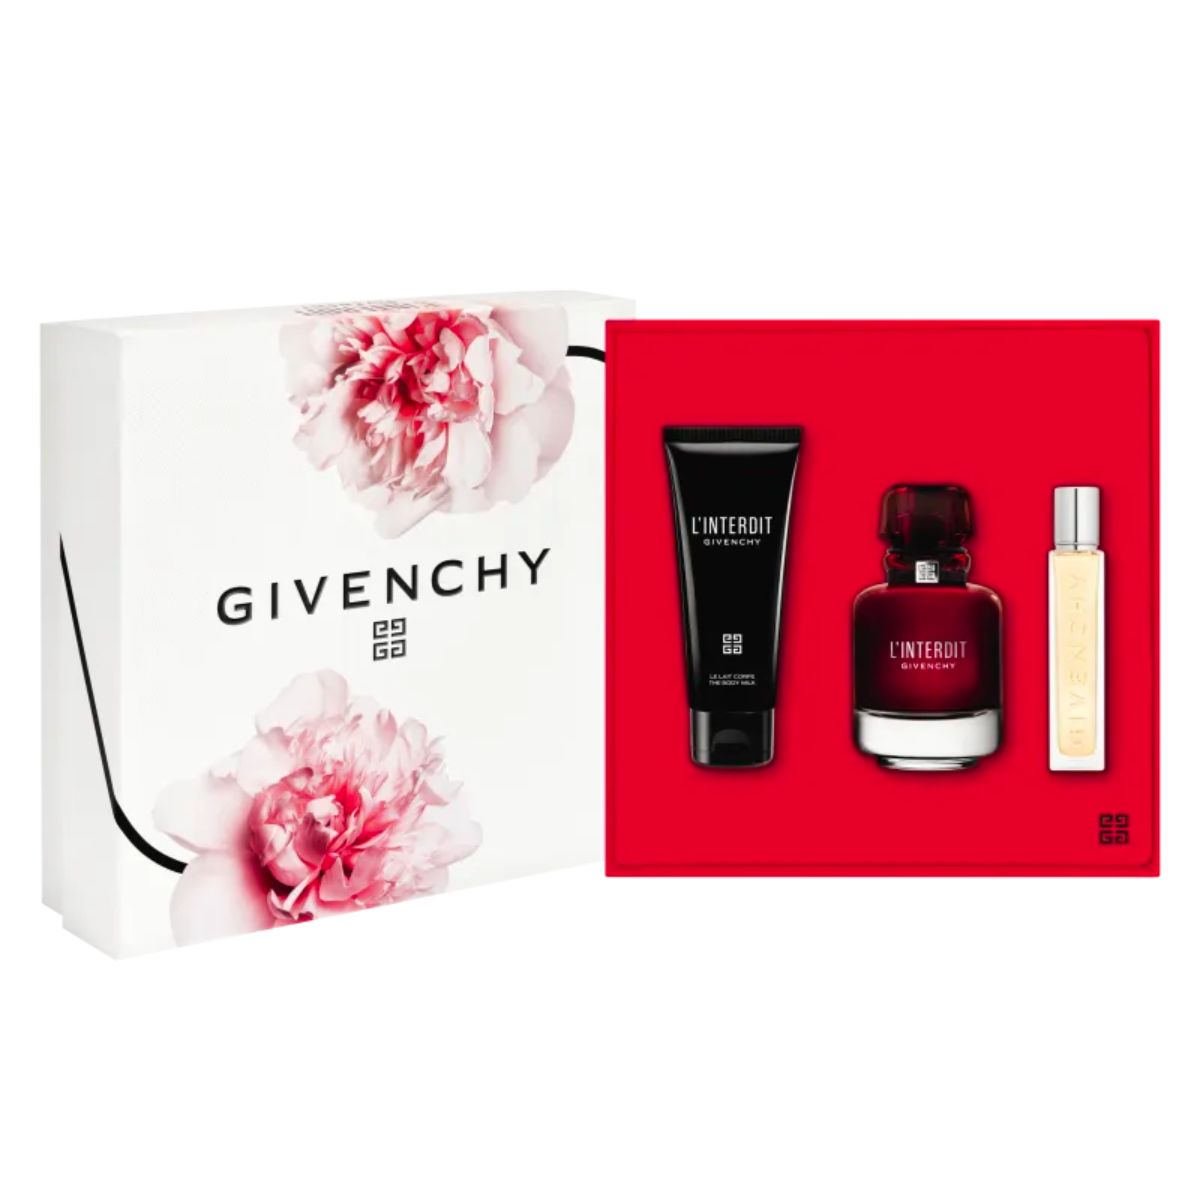 Kit Linterdit Rouge Givenchy Eau De Parfum 80 ml + Hidratante 75 ml + Travel Spray 12,5 ml